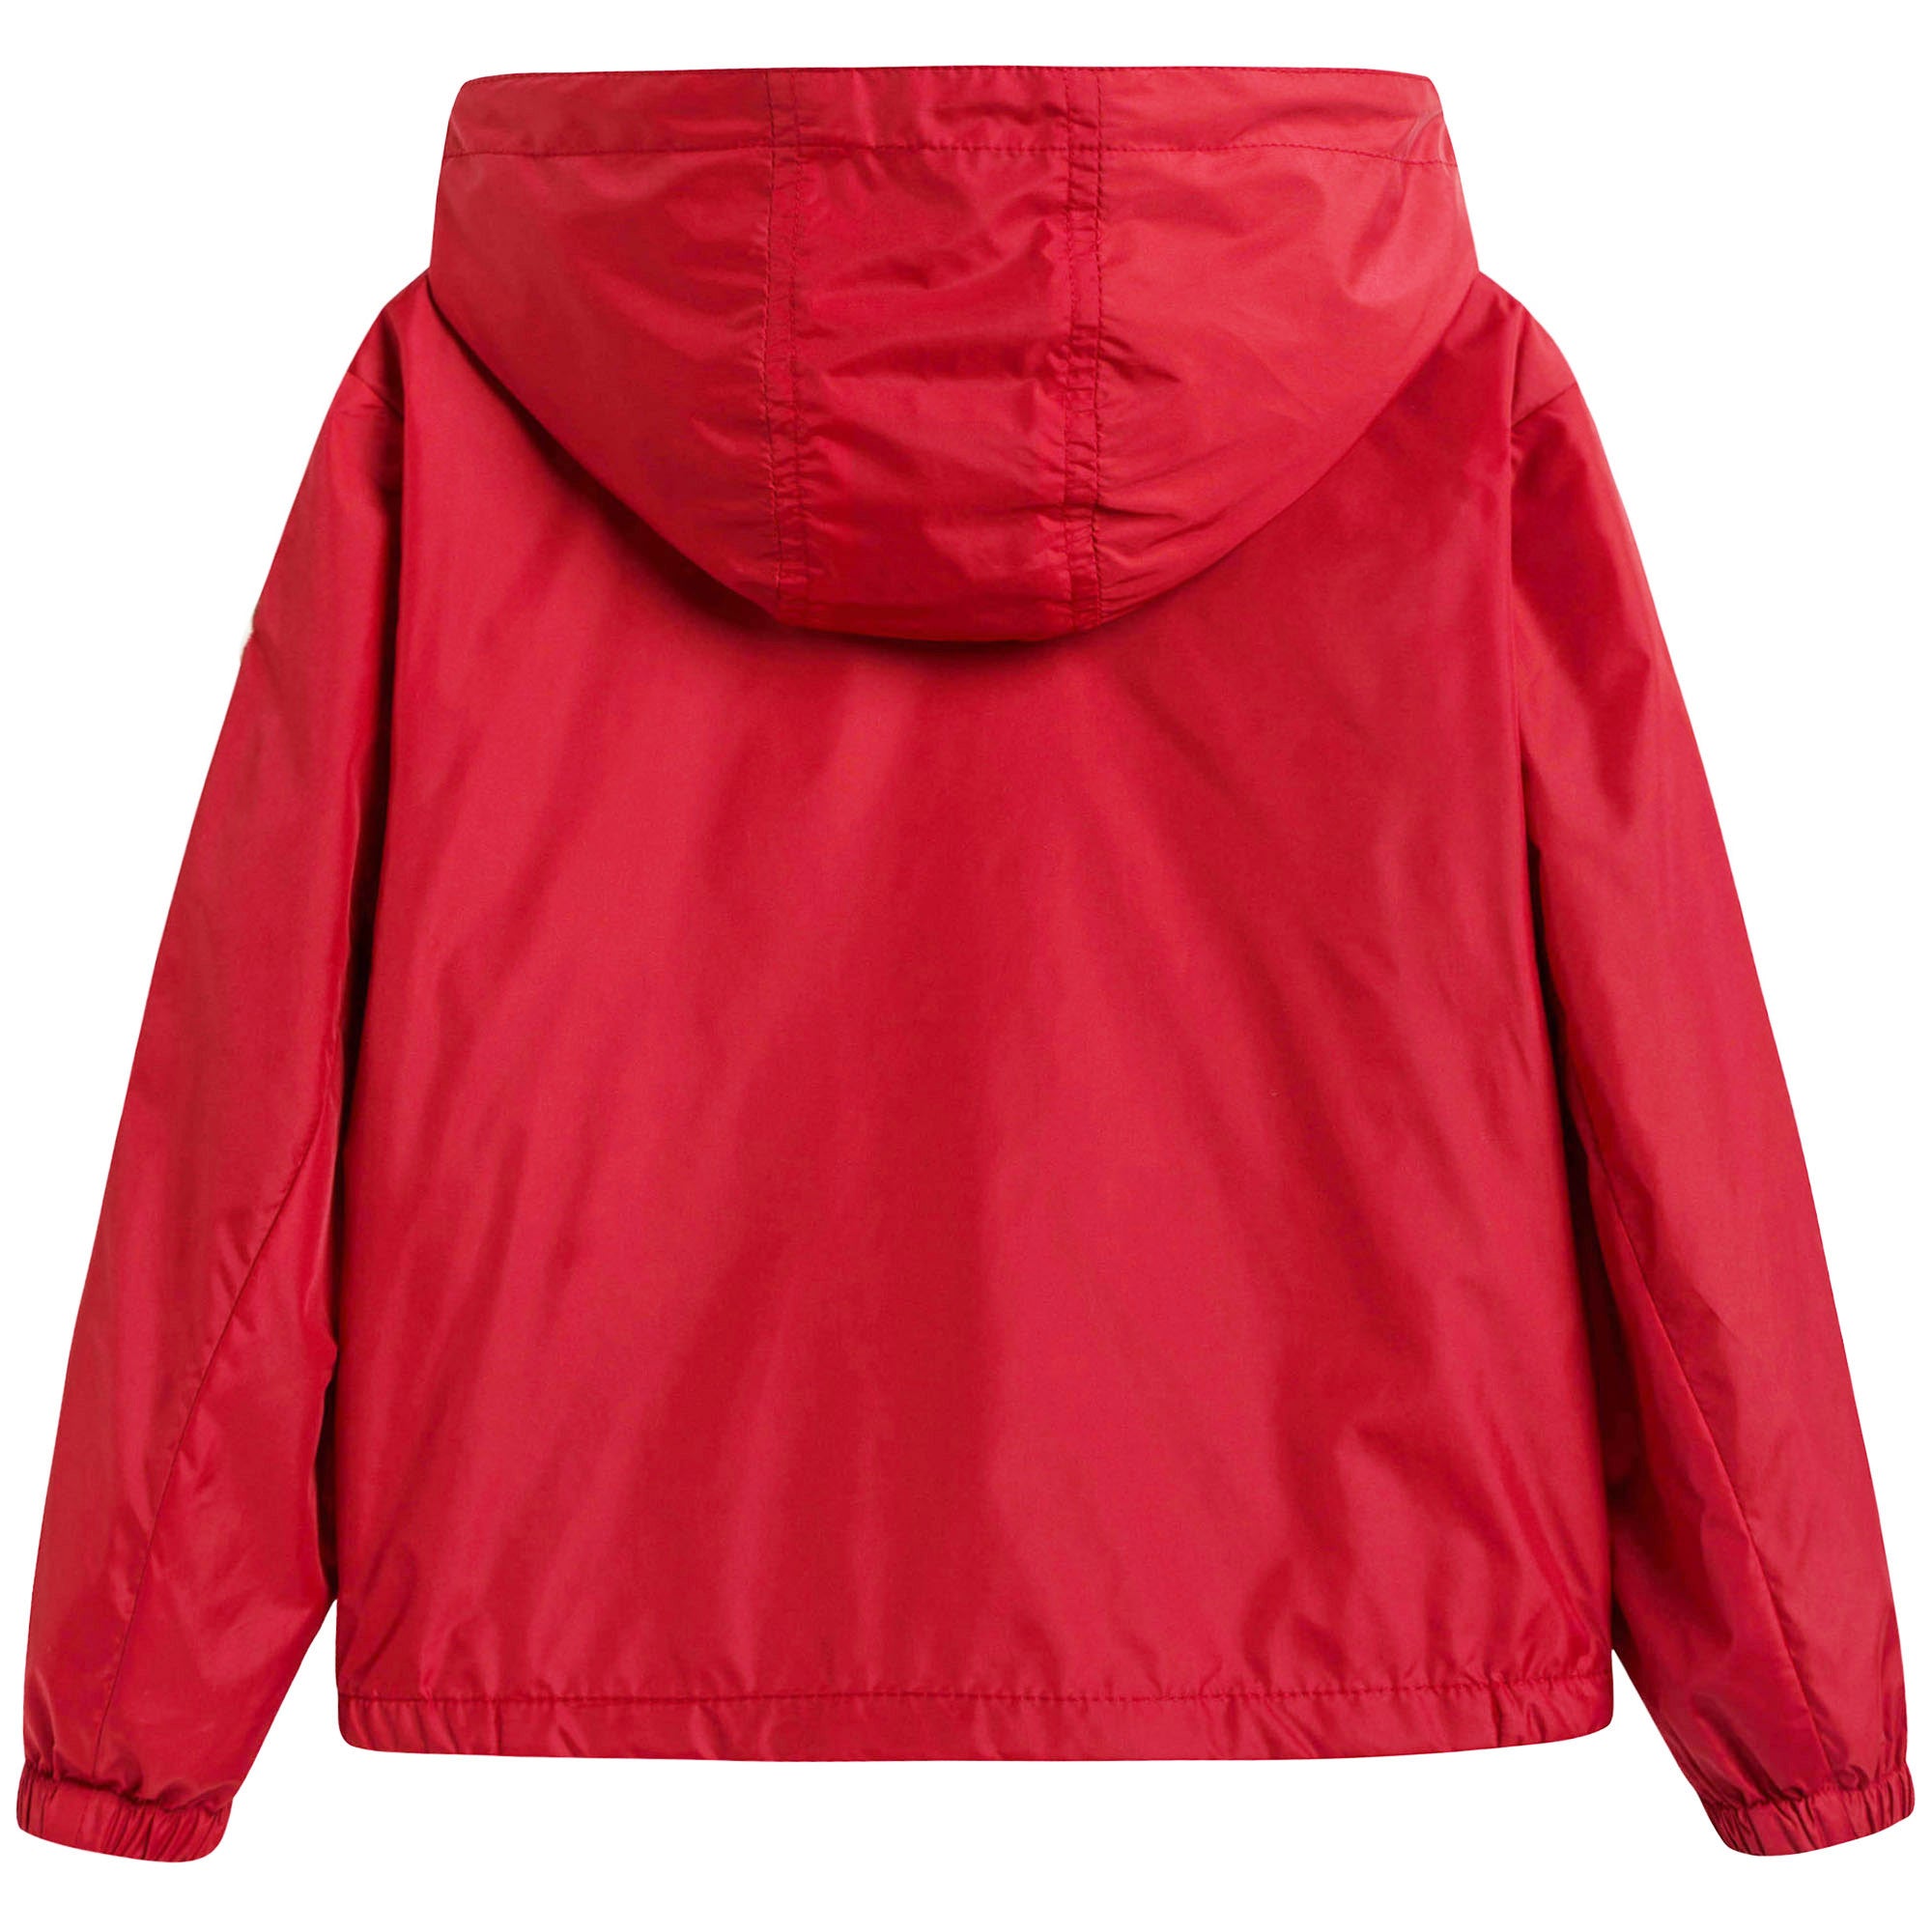 Boys Red Windbreaker Jacket